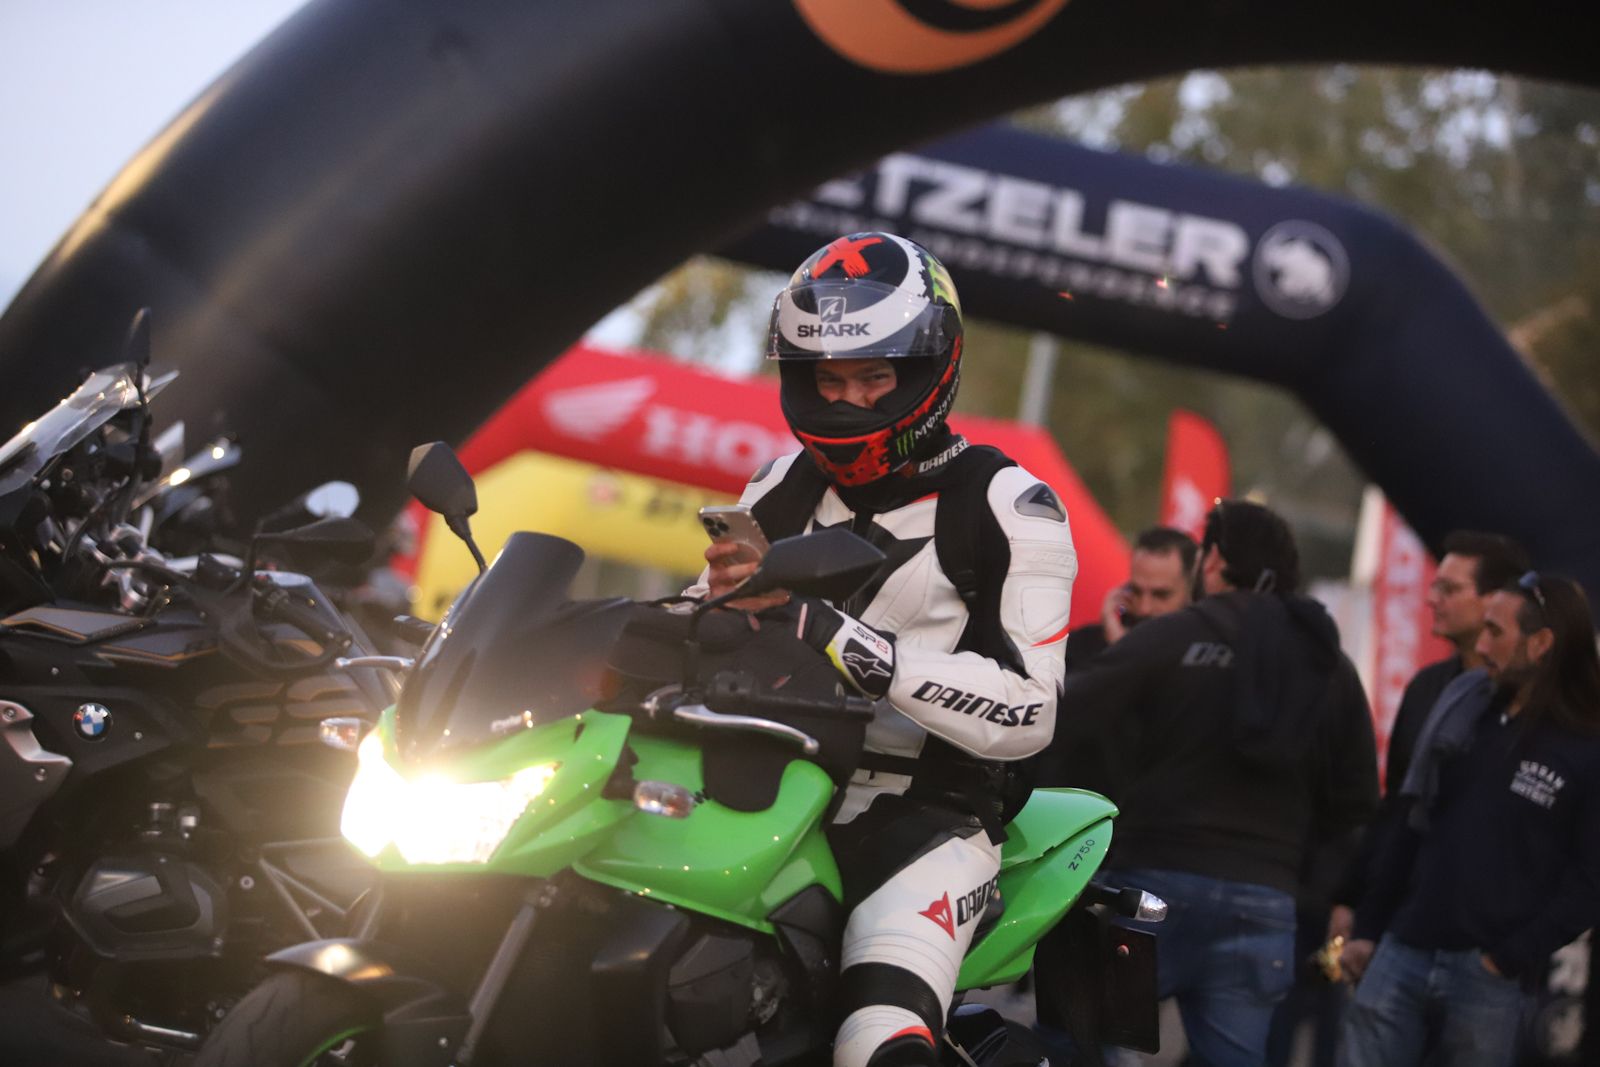 XTreme Challenge, el espectáculo de las motos en Córdoba, en imágenes